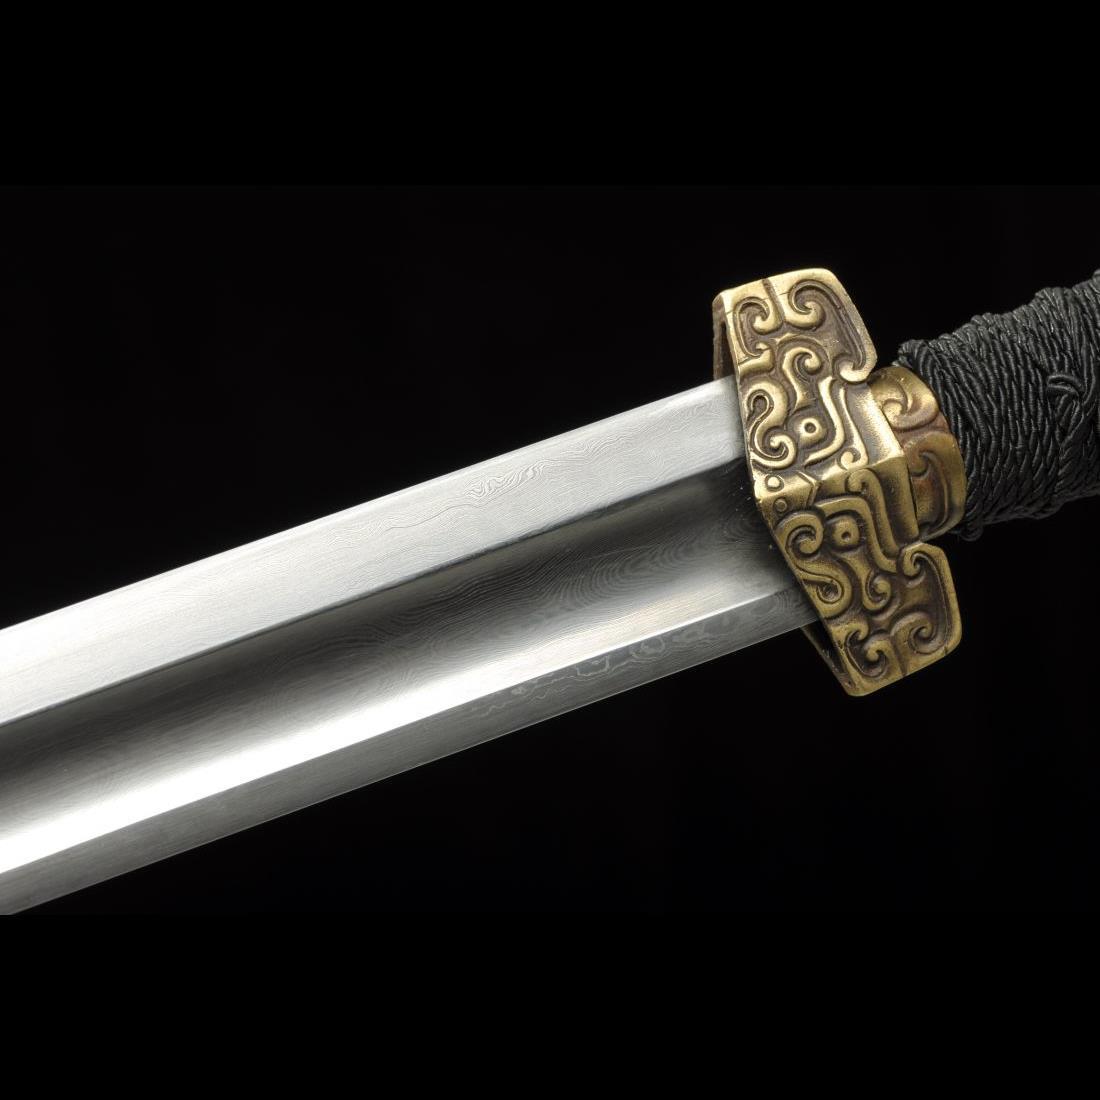 Handmade Chinese Sword Ring-Pommel Sword Straight Blade Dao Folded ...